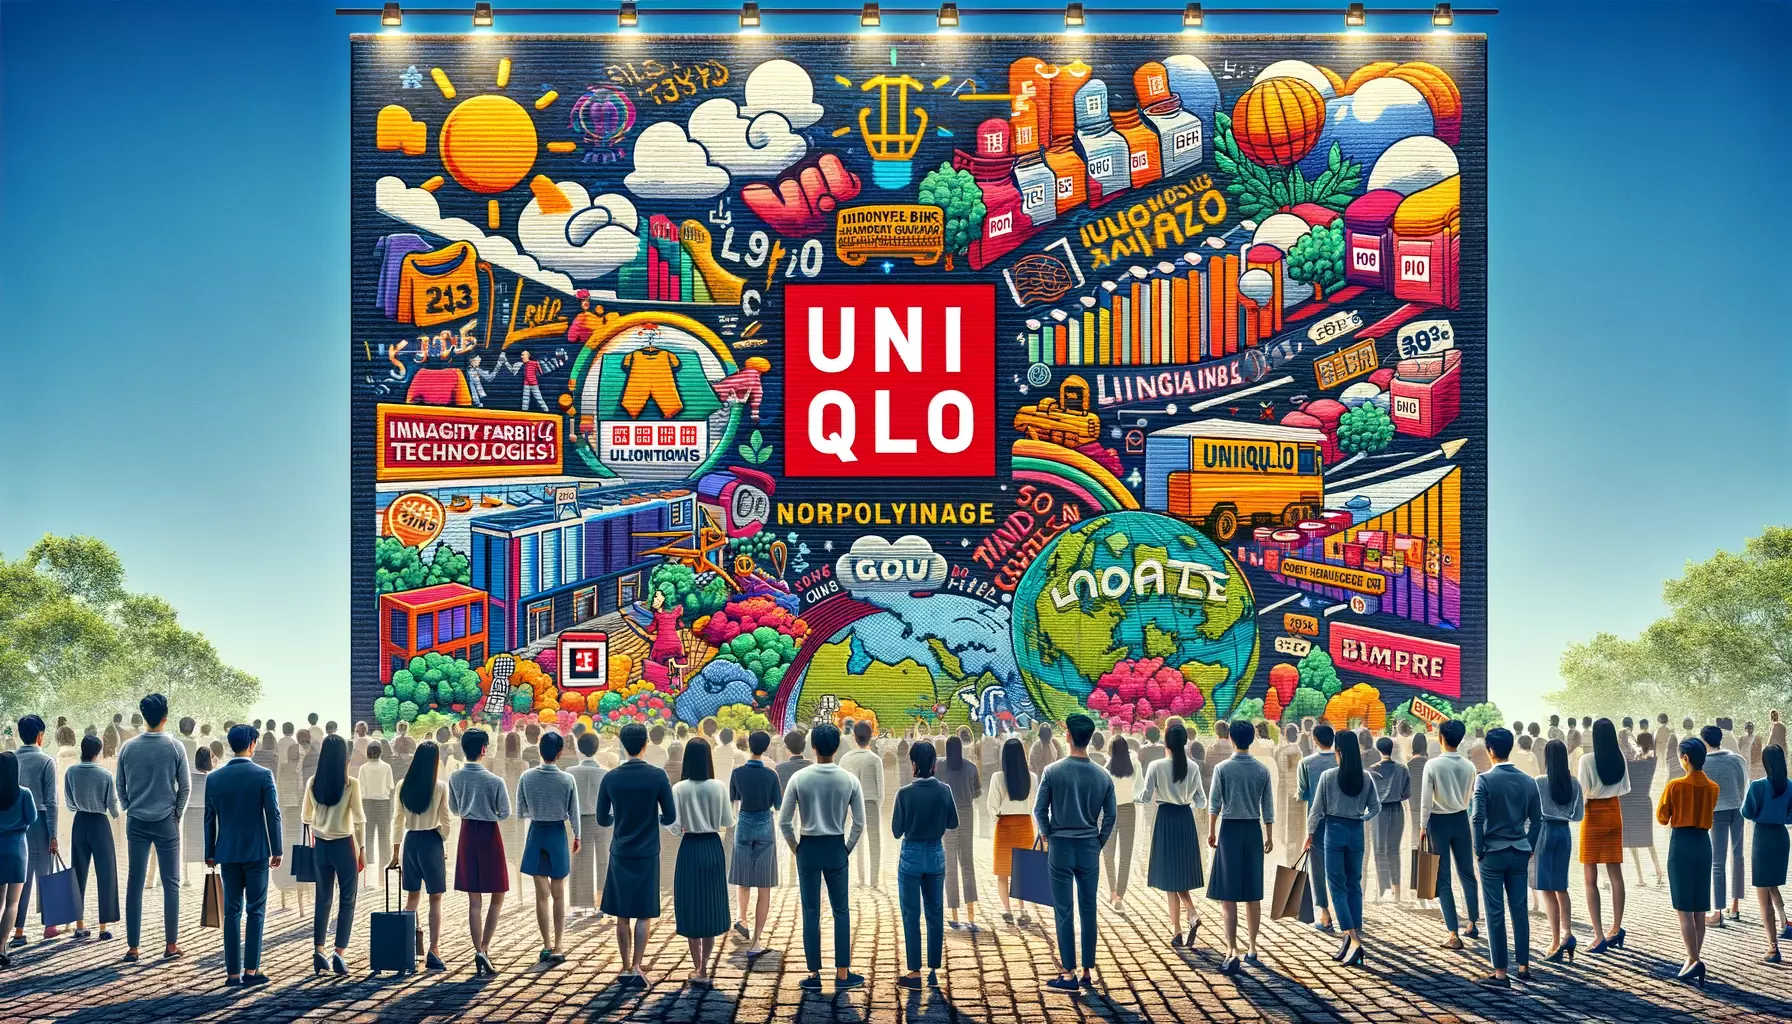 Uniqlo Marketing Strategy